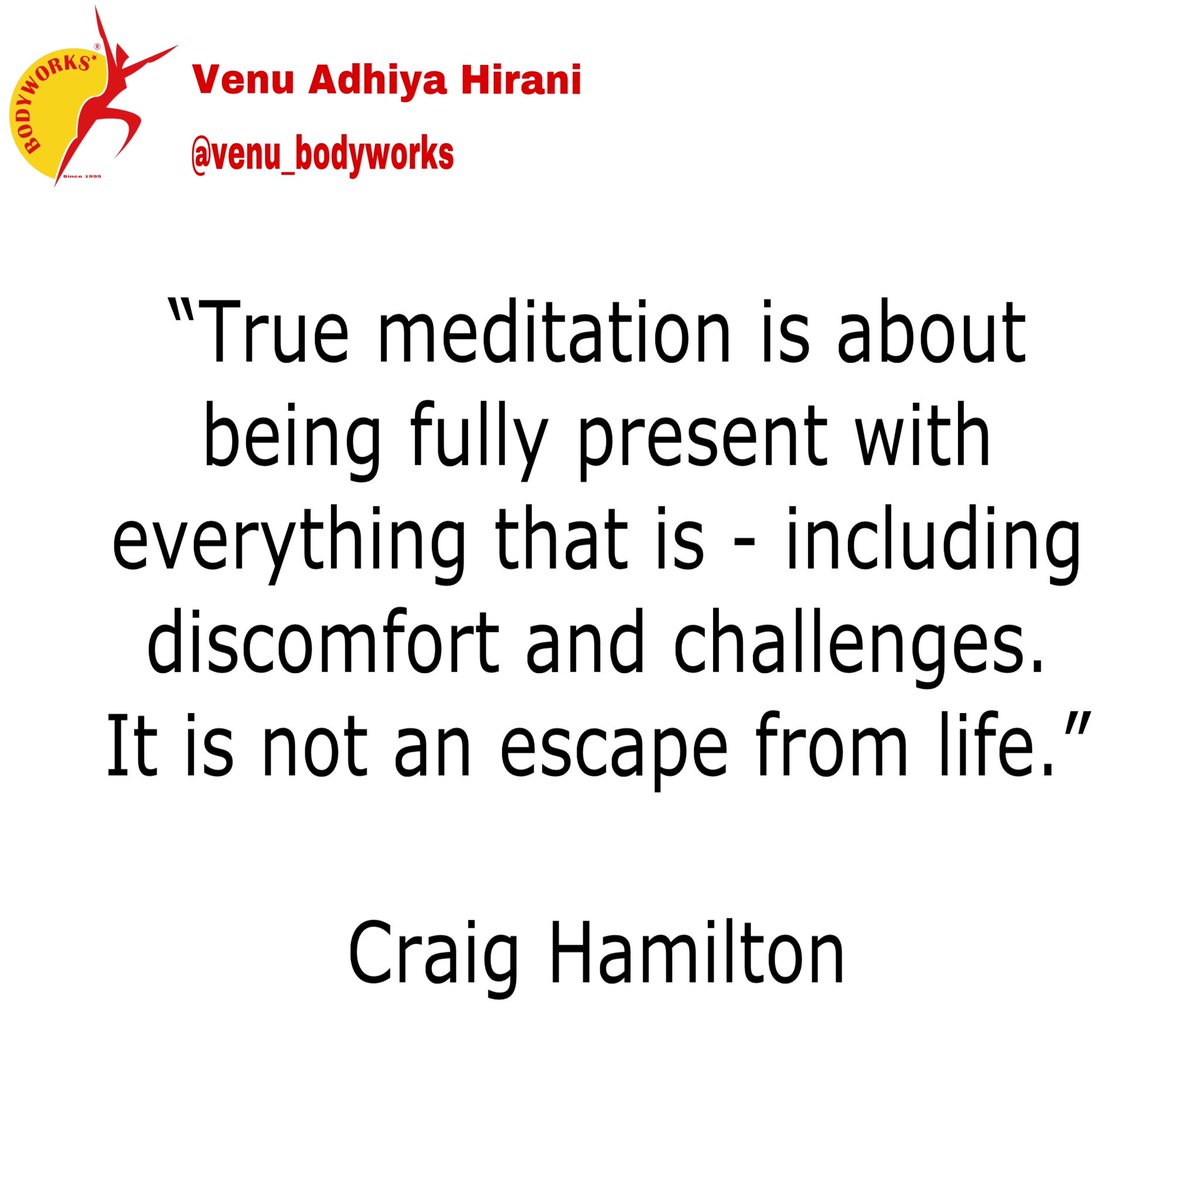 #meditation #yoga #yogaislife #mindfulness #motivationalquotes #lifequotes #lifelessons #mumbai #india